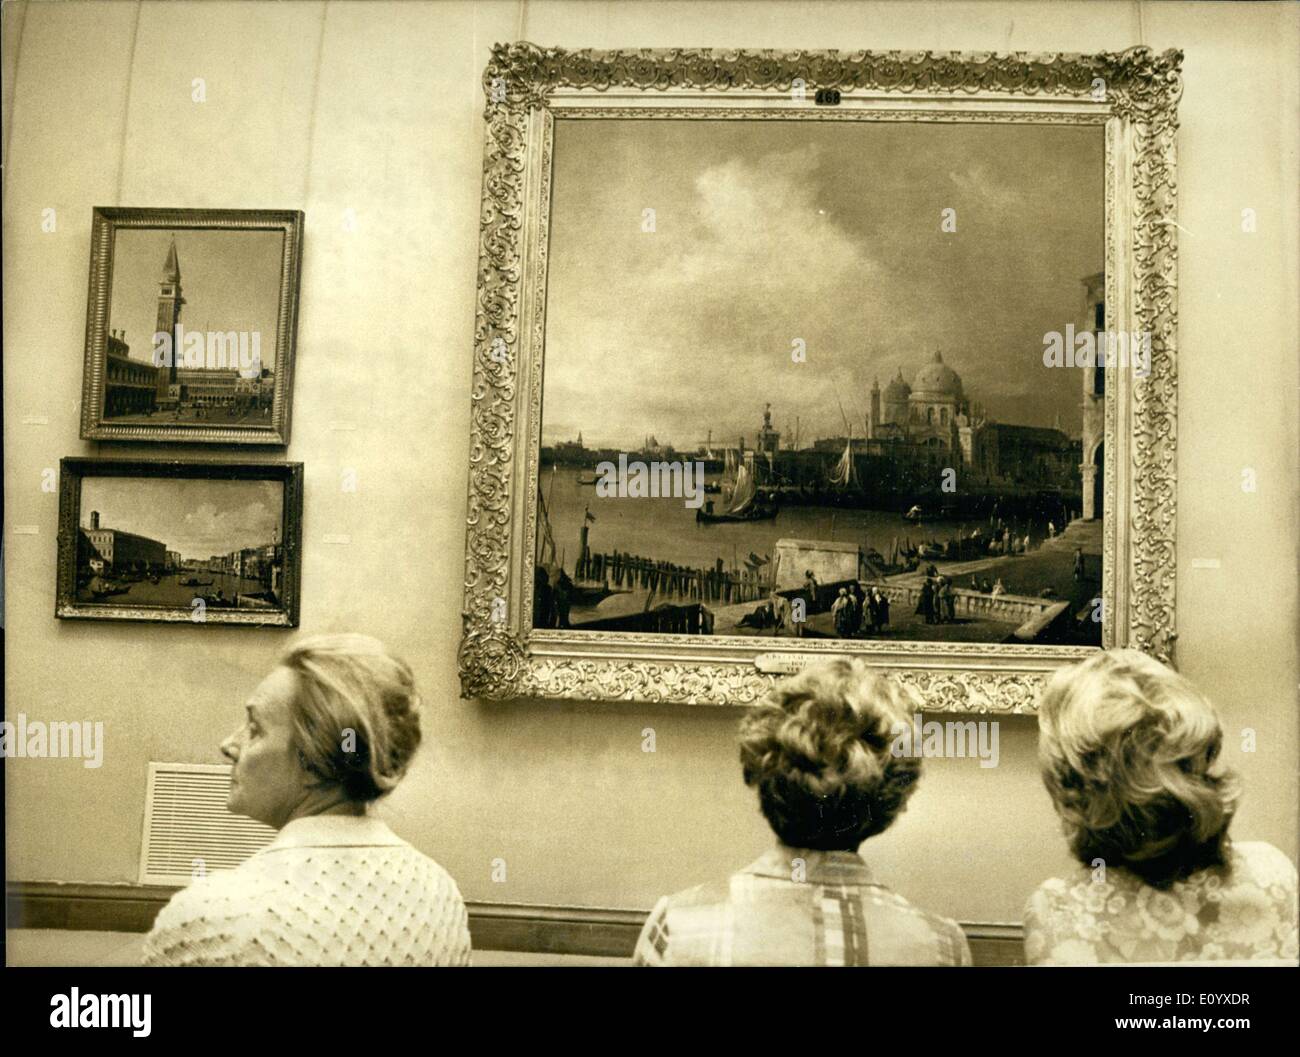 Sett. 21, 1971 - dipinti di canali di Venezia in mostra al Museo Orangerie .c Foto Stock